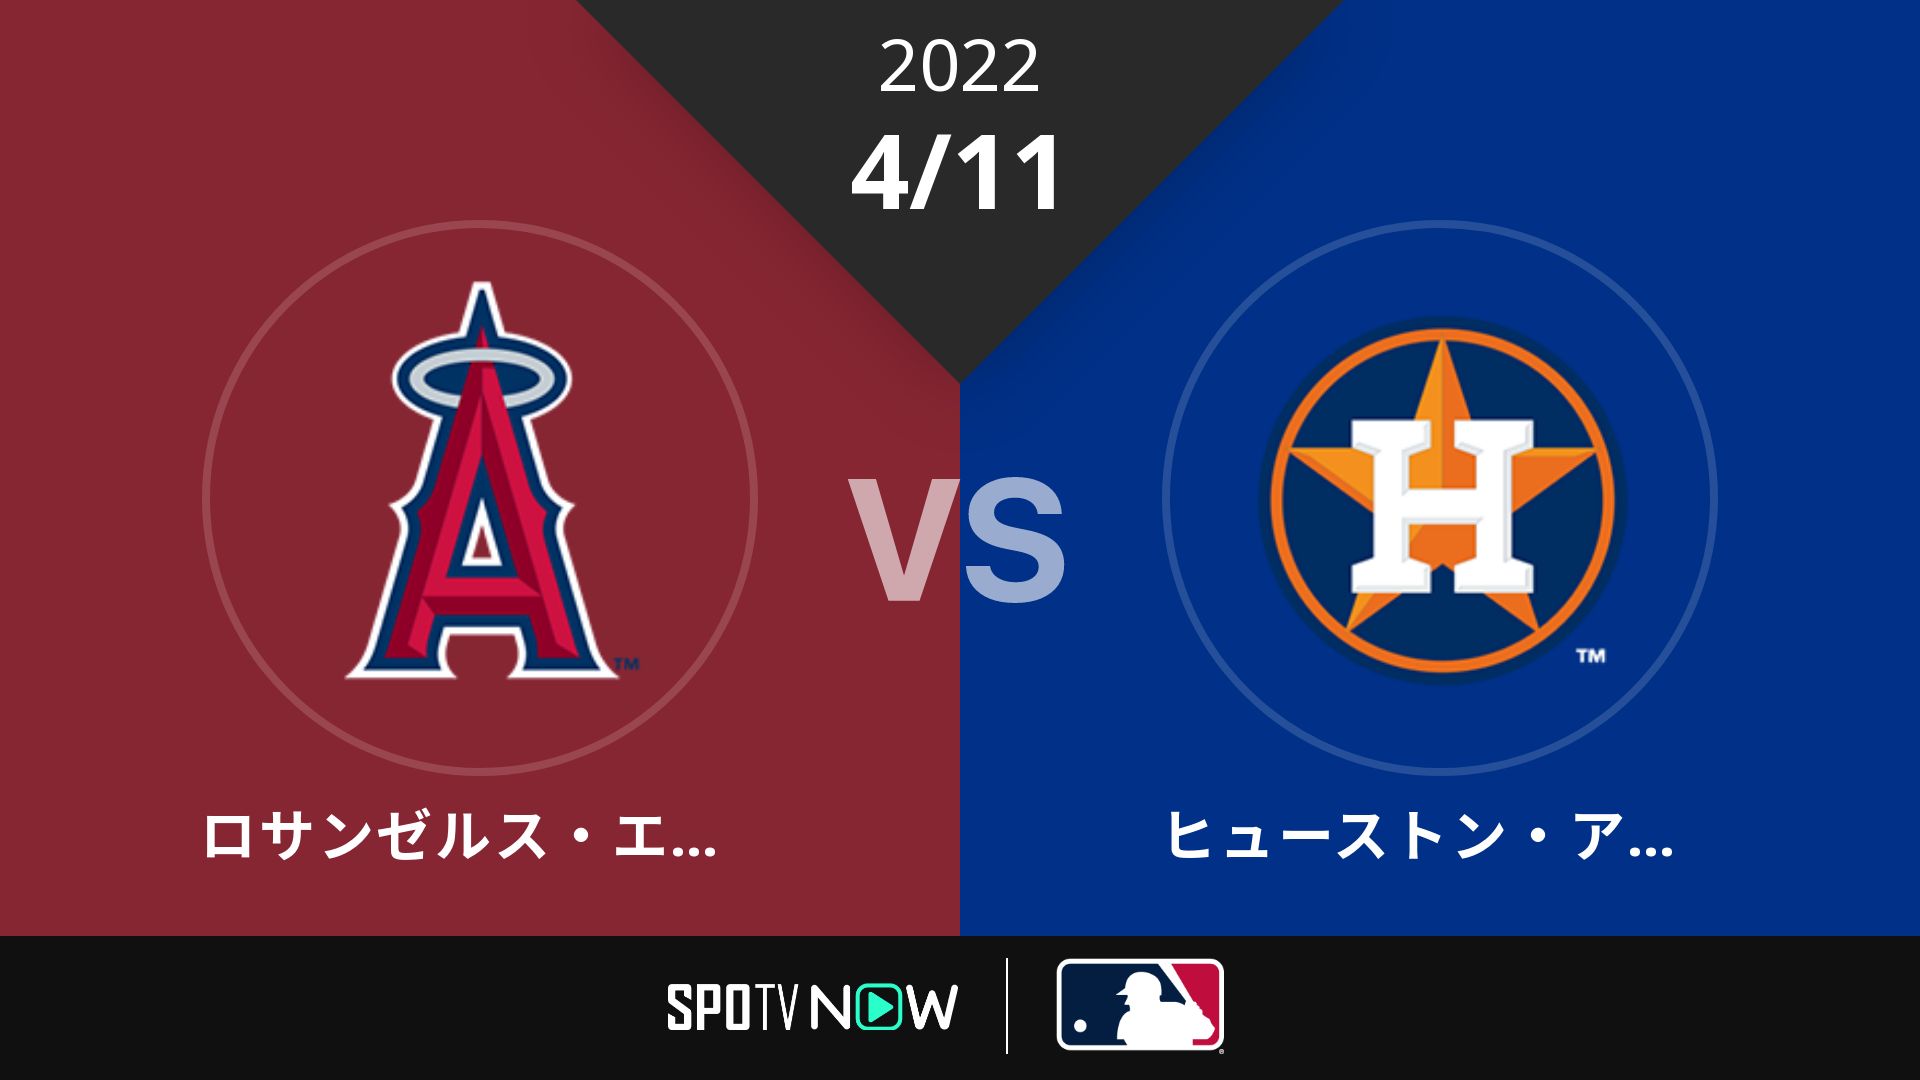 2022/4/11 エンゼルス vs アストロズ [MLB]